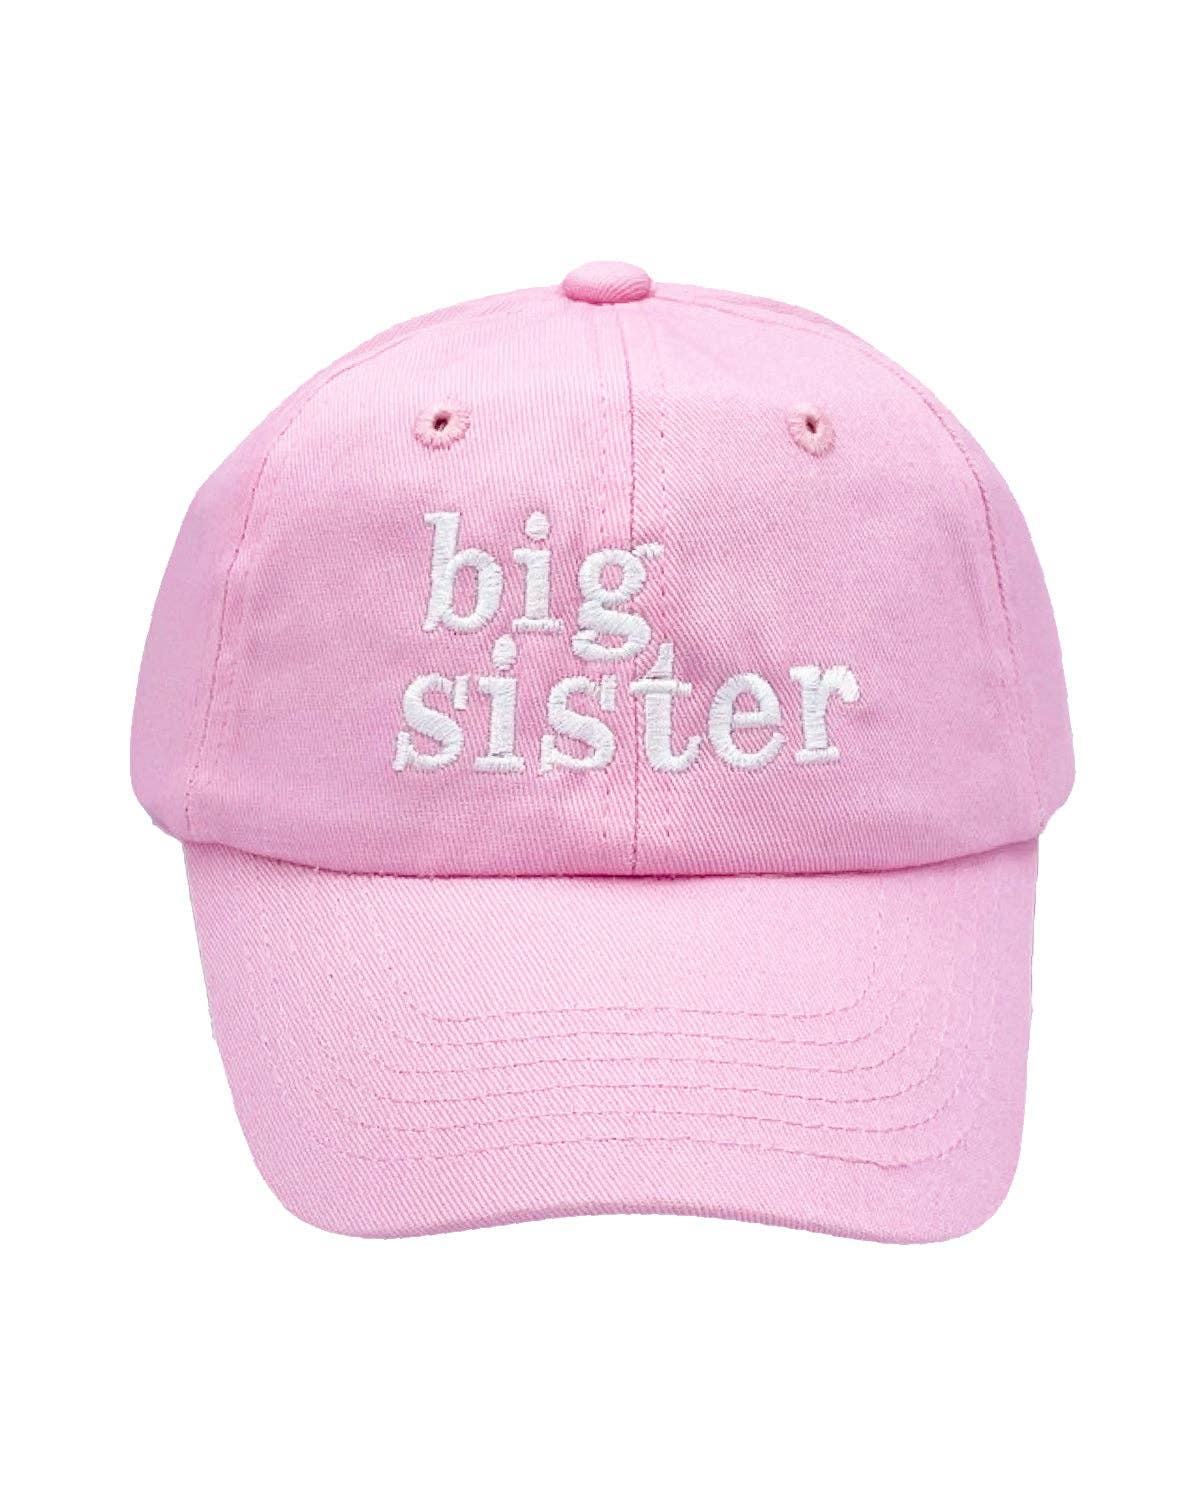 Big Sister Bow Baseball Hat